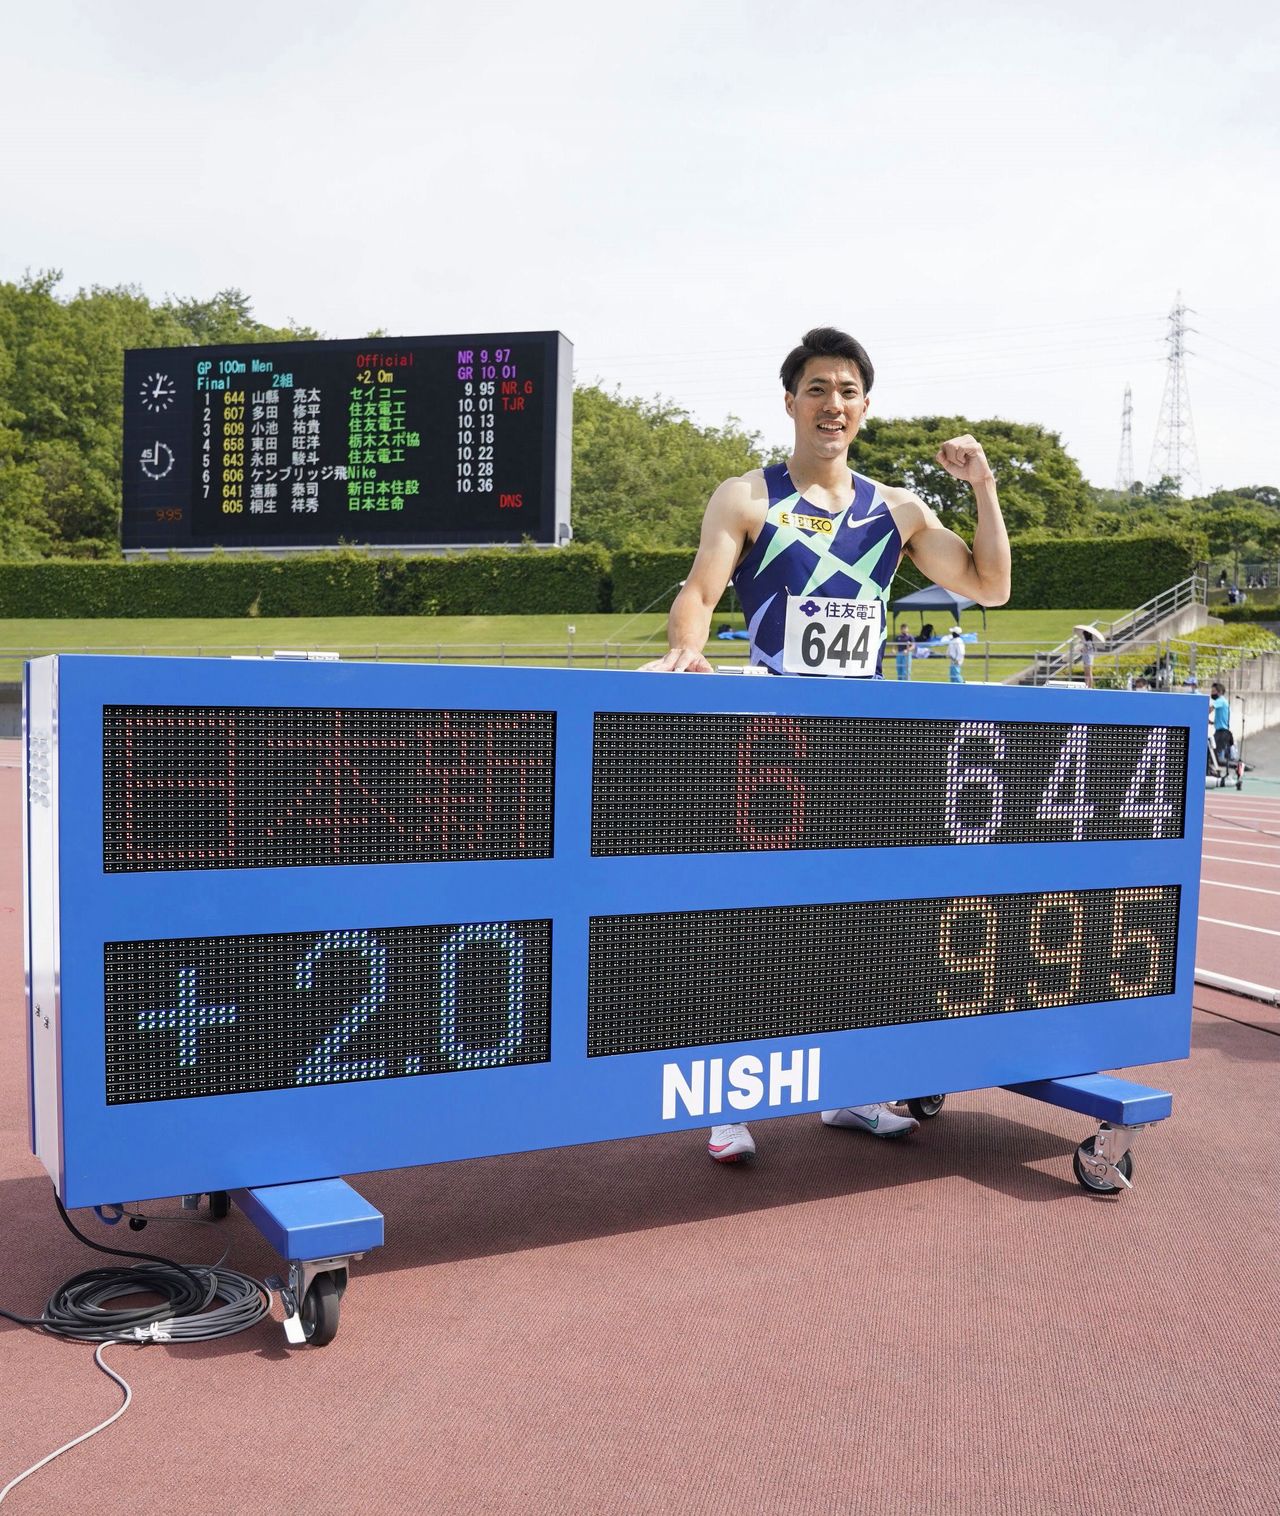   ياماغاتا ريوتا يقف بجوار شاشة تُظهر رقمه القياسي البالغ 9,95 ثانية في السادس من يونيو/ حزيران 2021 (جيجي برس)